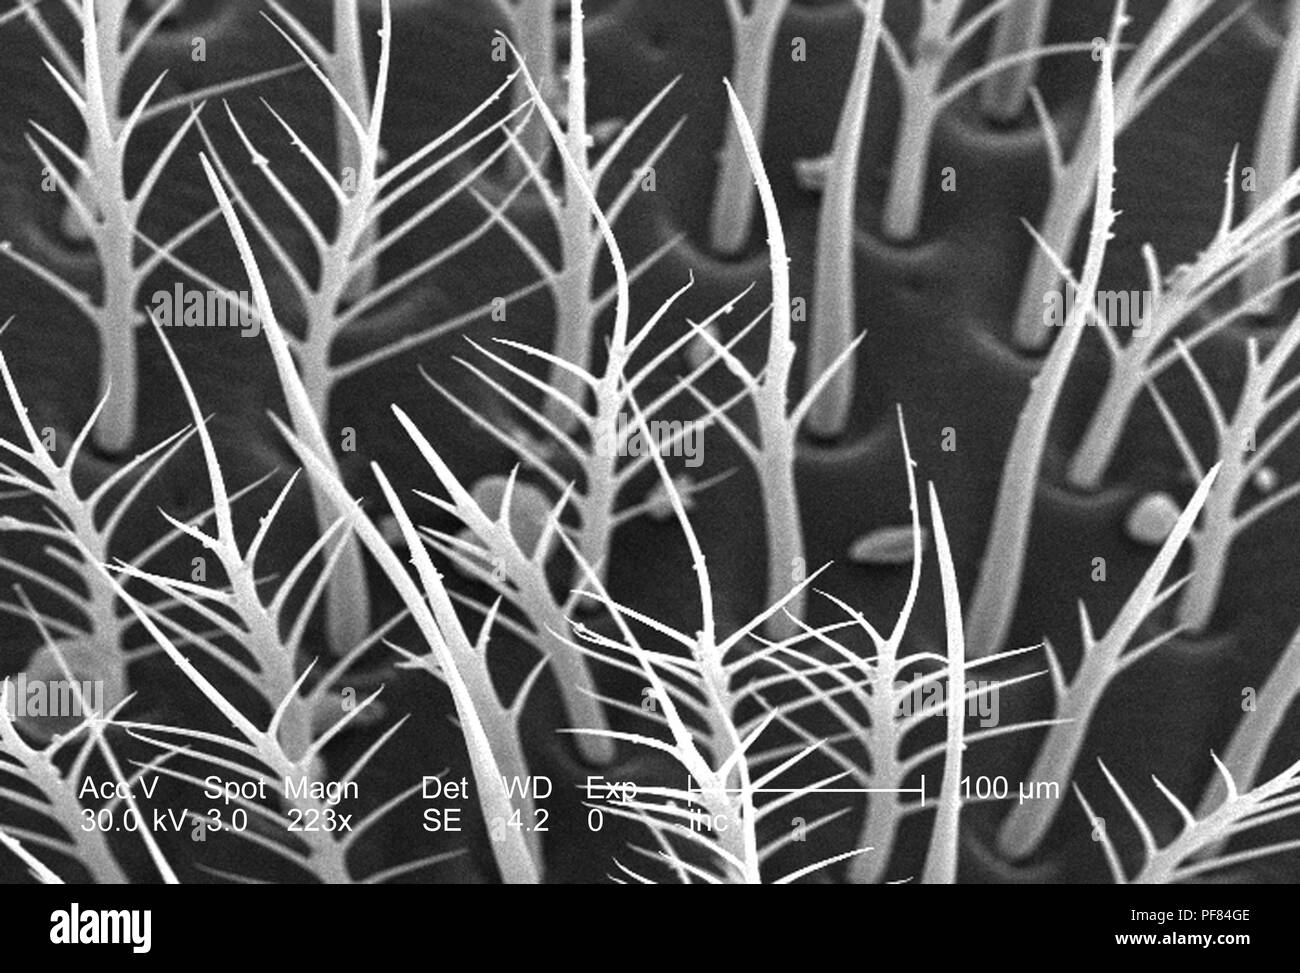 Exoskeletal superficie di un non ben identificato di colore verde trovato insetti in Decatur, Georgia, ha rivelato nel 223x di scansione ingrandita al microscopio elettronico (SEM) immagine, 2006. Immagine cortesia di centri per il controllo delle malattie (CDC) / Janice Haney Carr. () Foto Stock